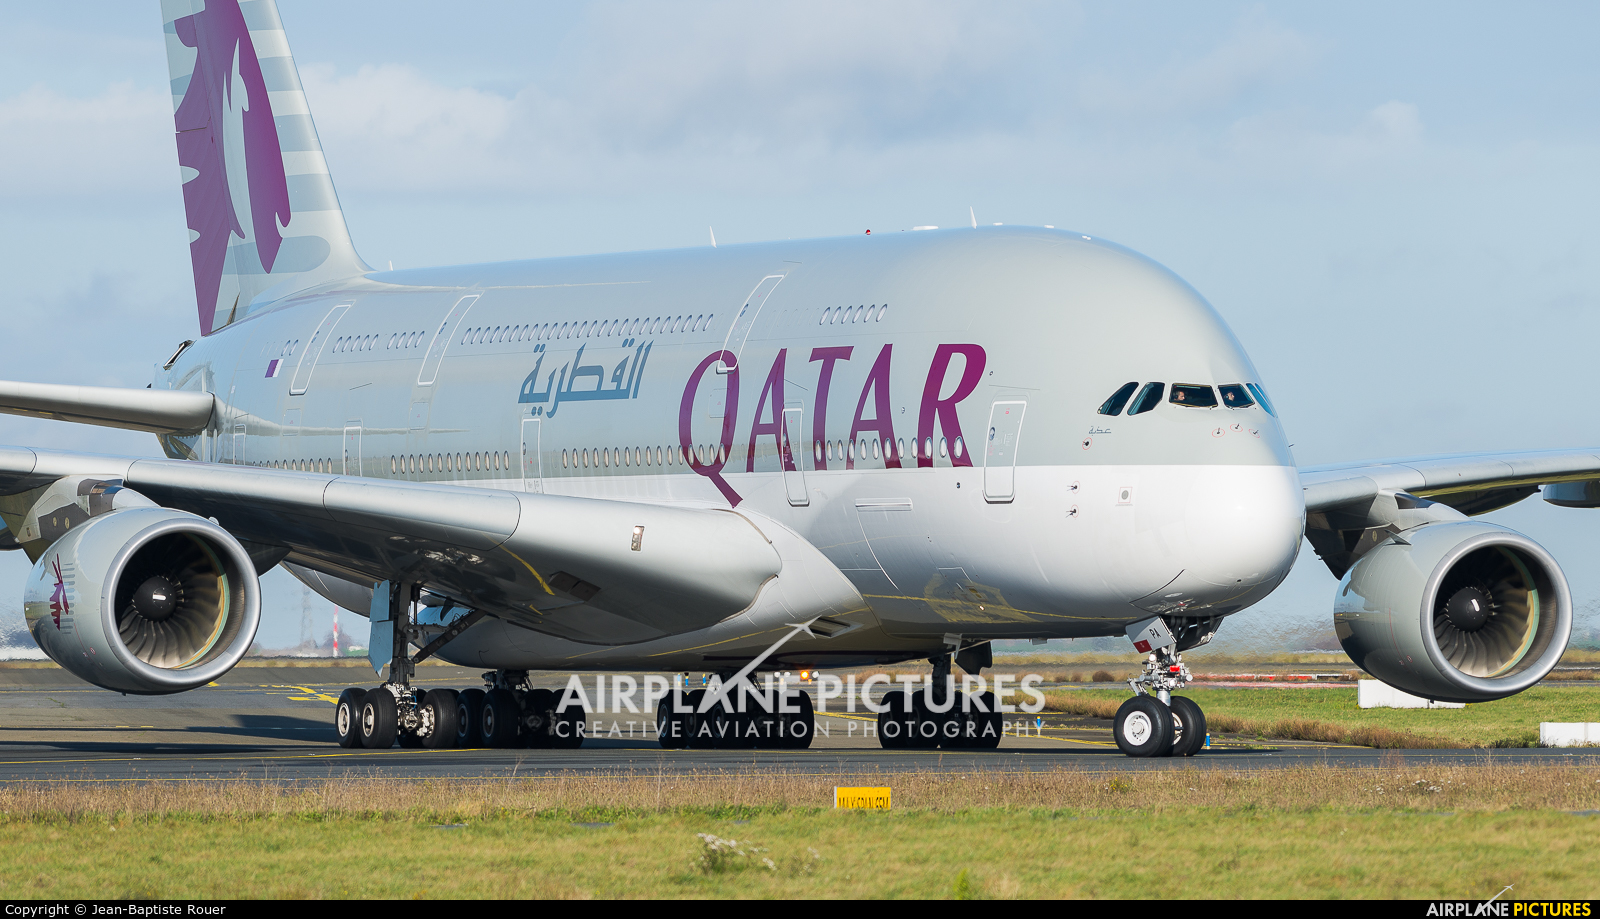 Qatar Airways A7-apa Aircraft At Paris - Qatar Airways A380 Wallpaper Hd -  1600x919 Wallpaper 